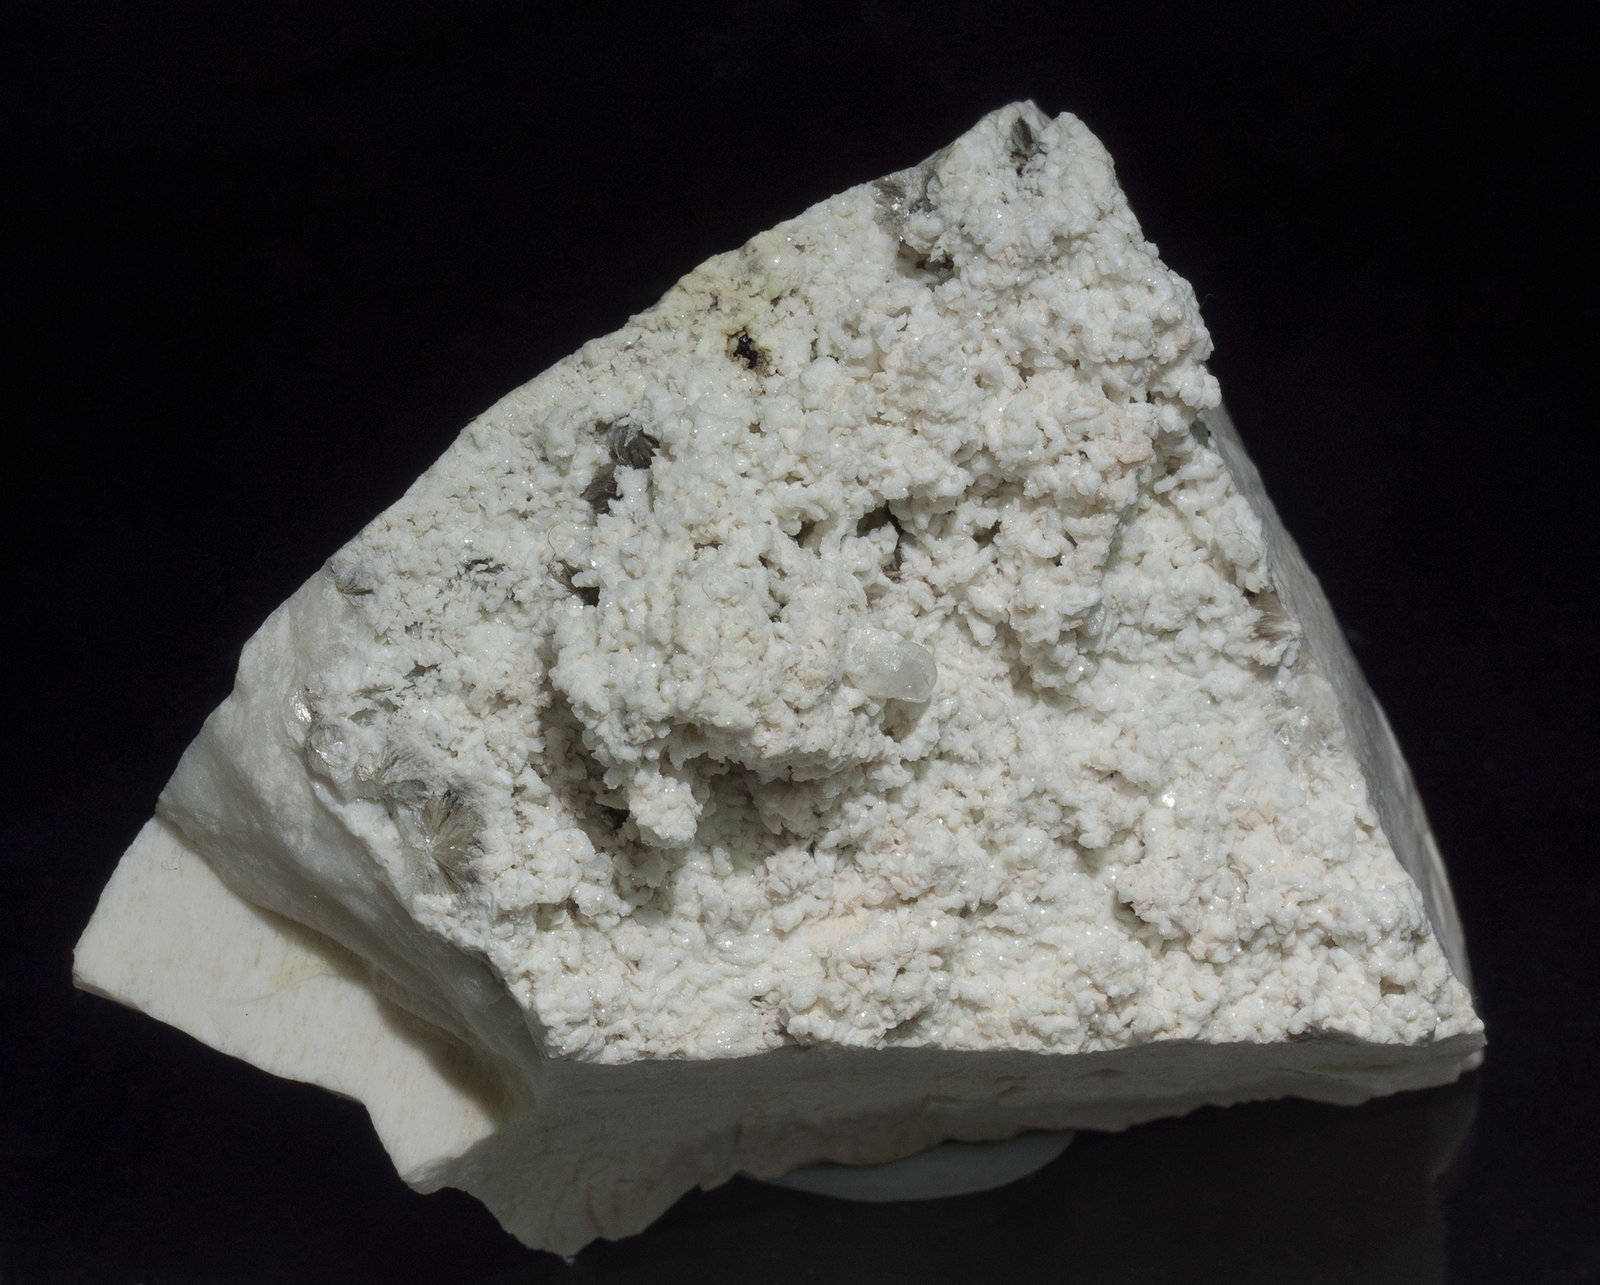 specimens/s_imagesZ6/Stokesite-NA28Z6f.jpg